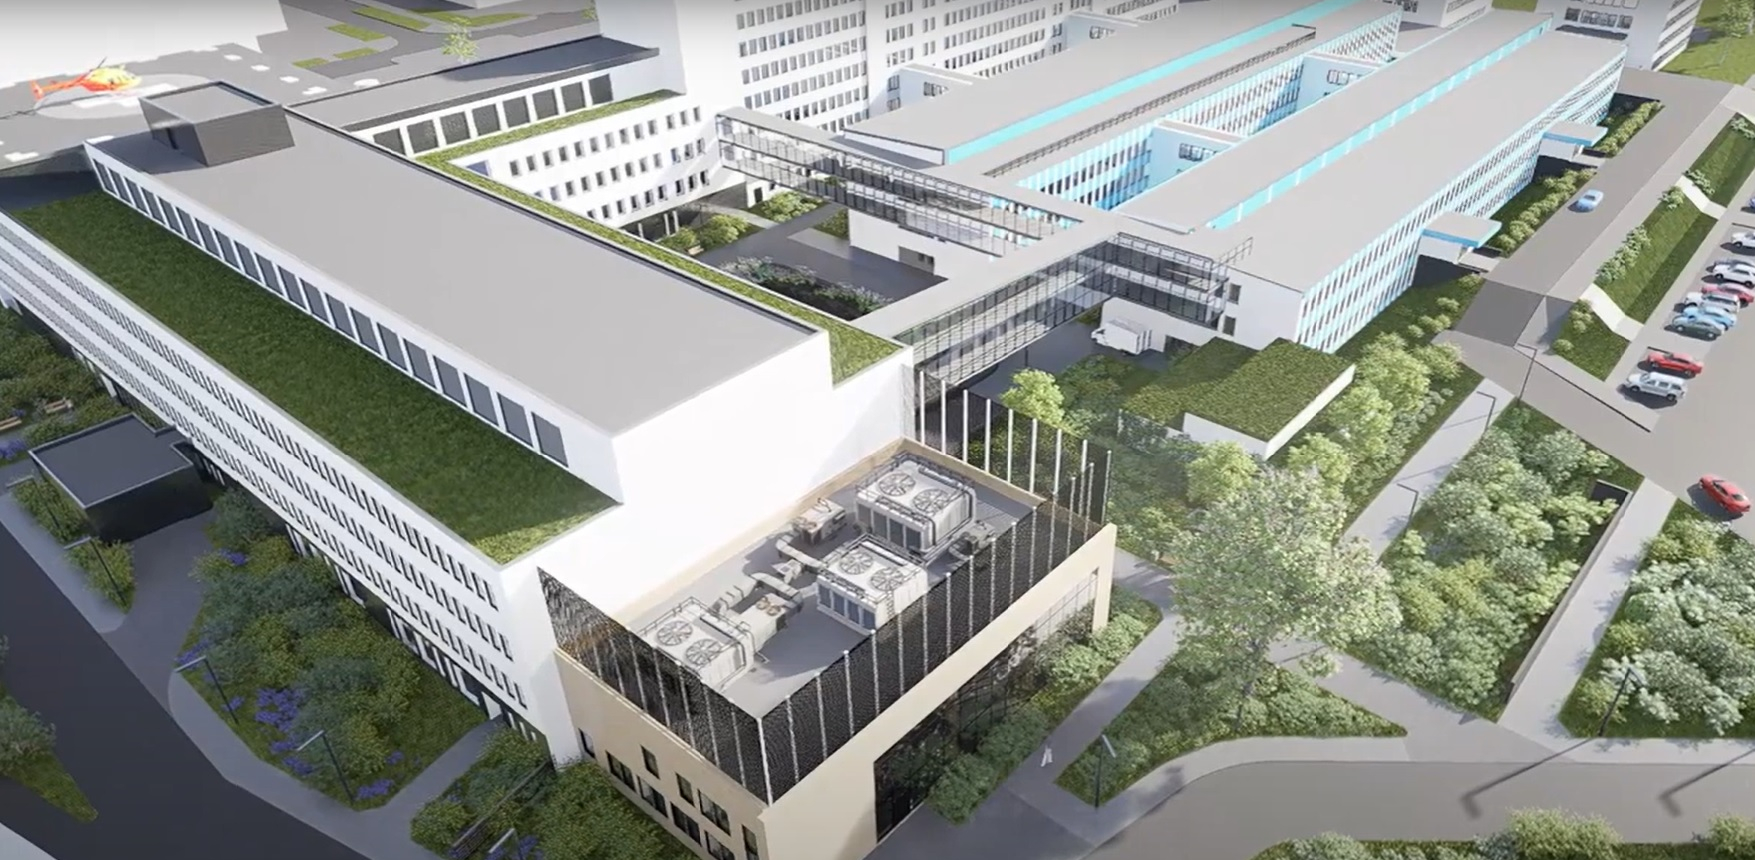 Wizualizacja nowego budynku szpitala z lotu ptaka uwzględniająca istniejące budynki A, B i C